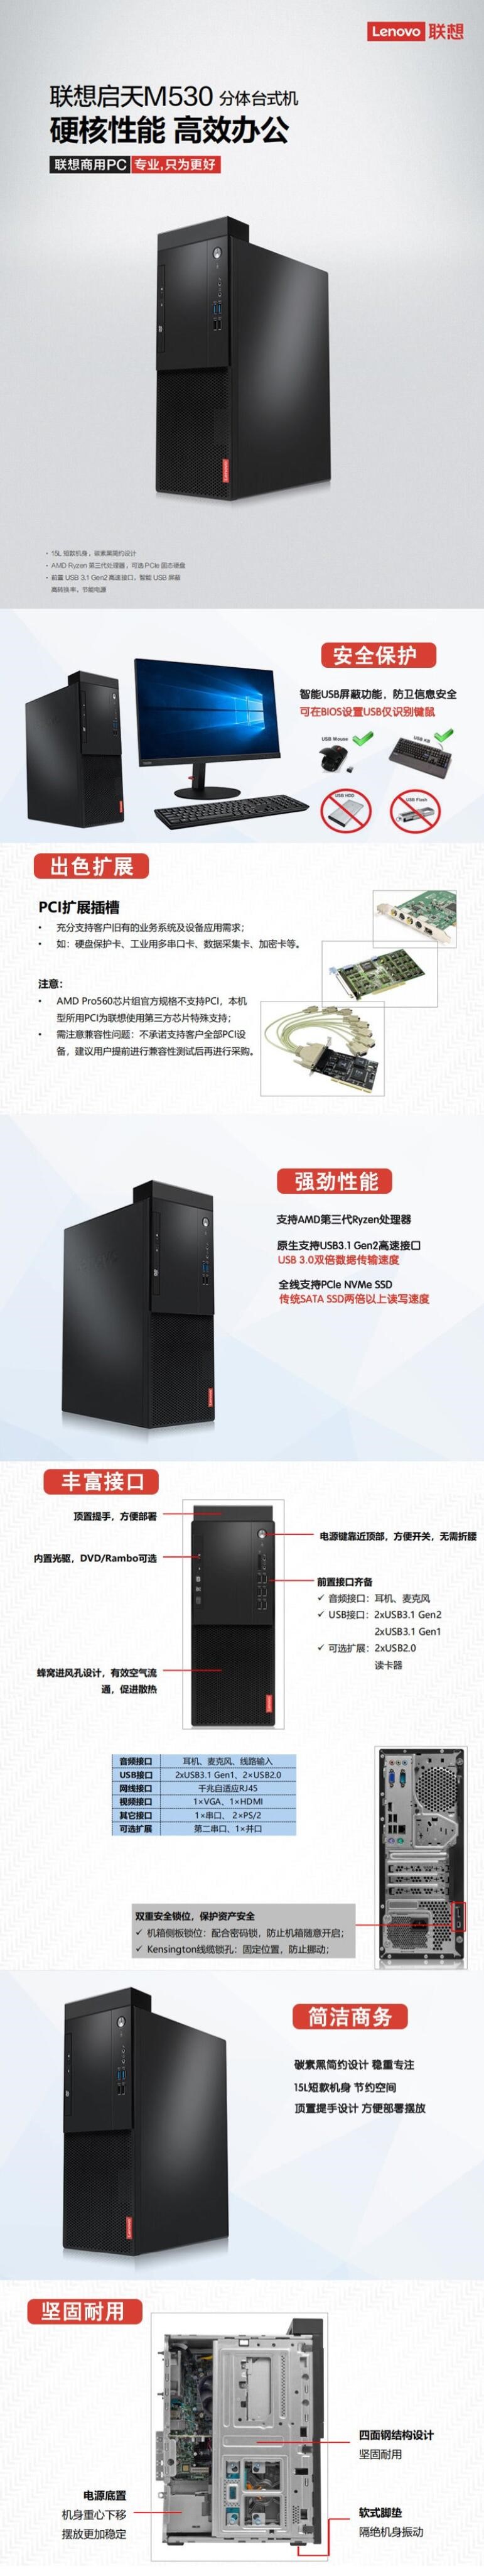 联想/Lenovo 启天M530-A403 台式整机  (图6)